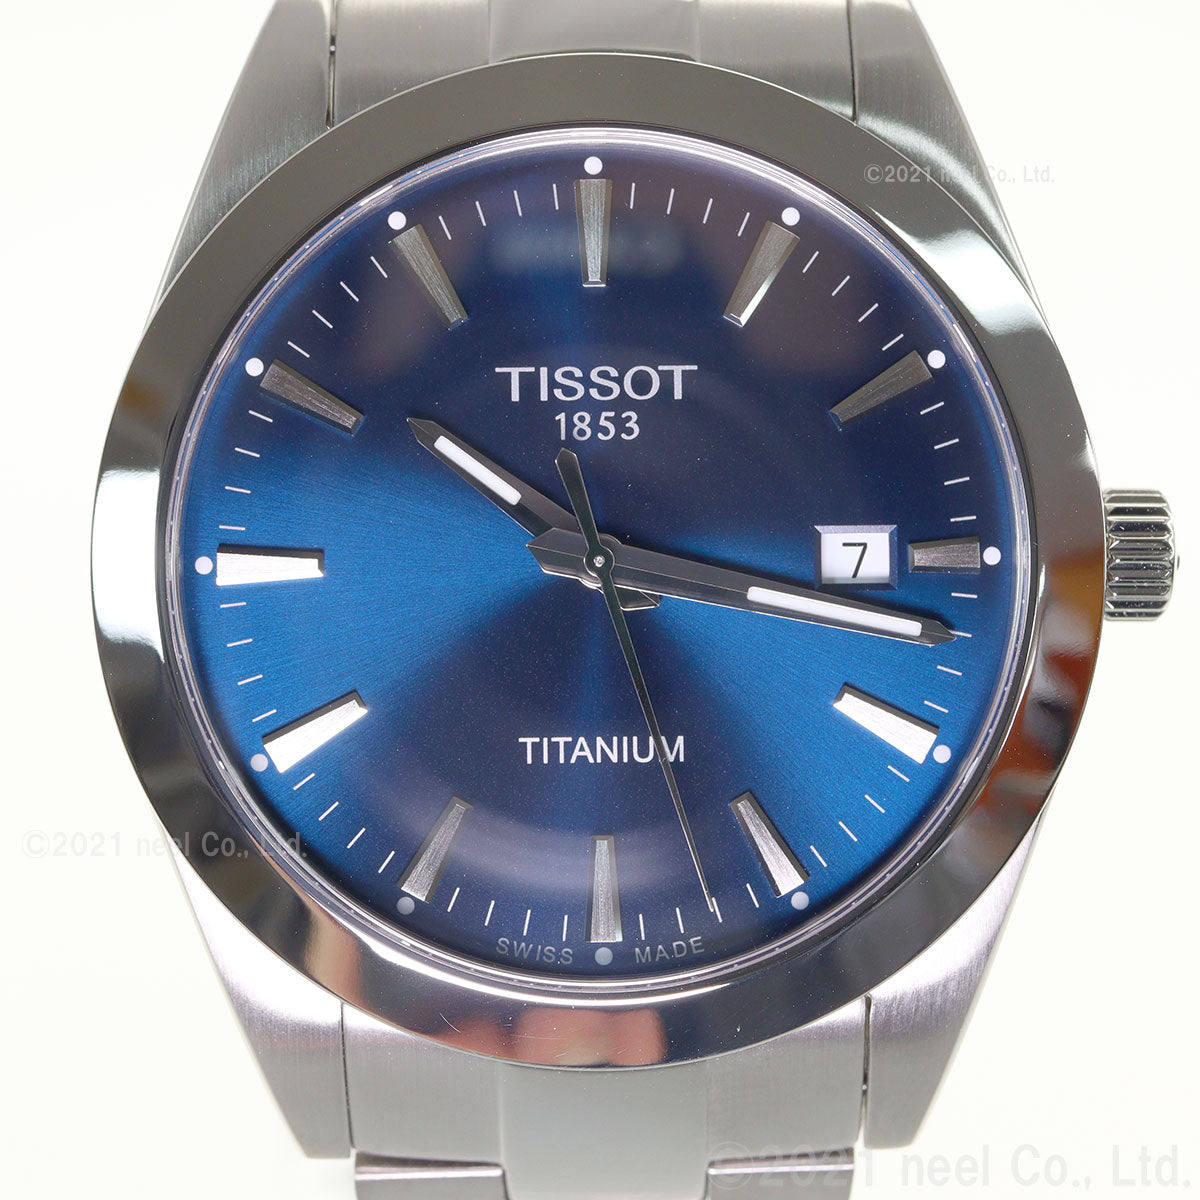 ティソ TISSOT 腕時計 メンズ ジェントルマン チタニウム GENTLEMAN TITANIUM T127.410.44.041.00